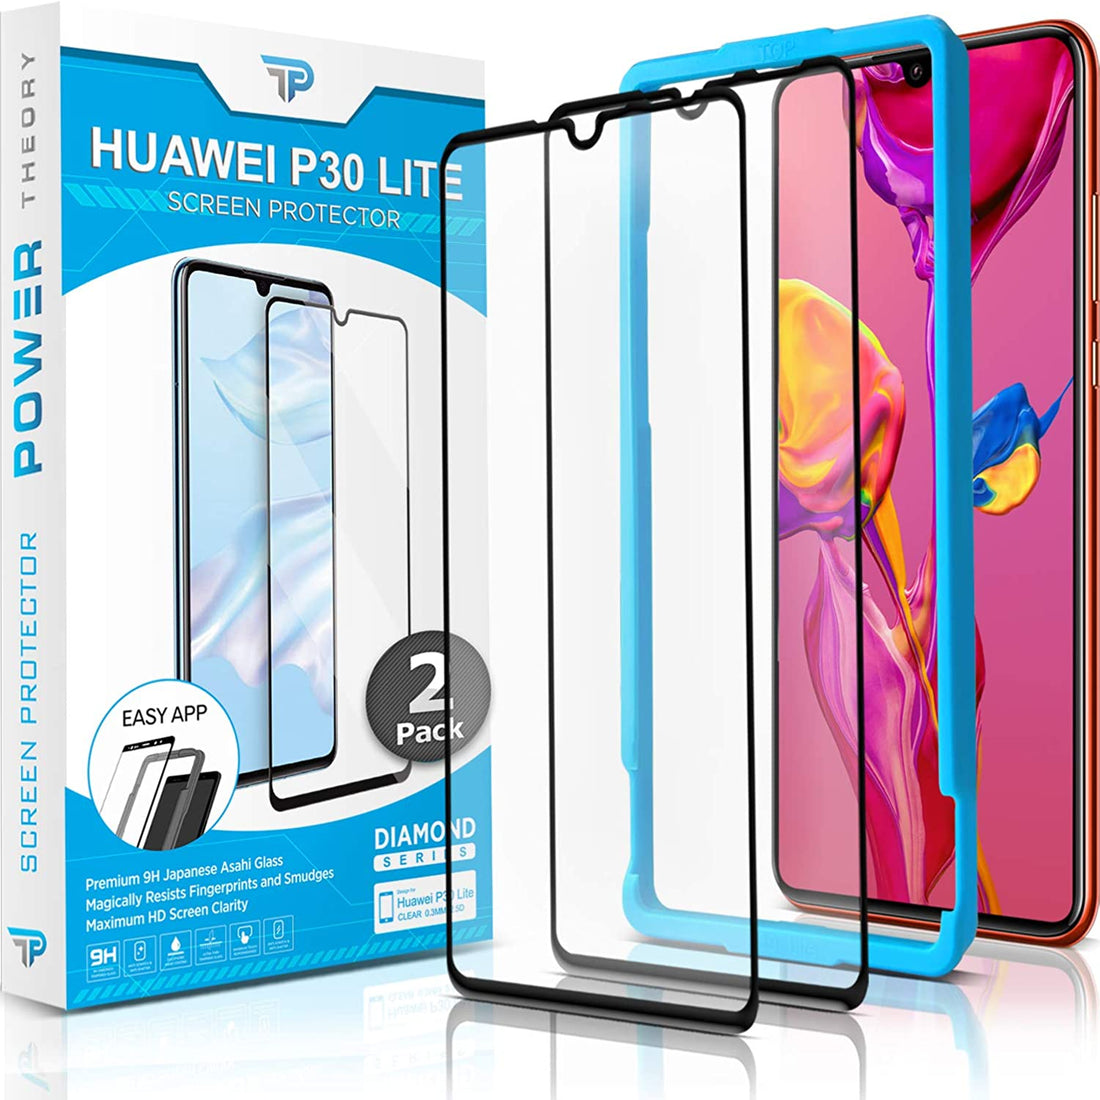 Power Theory Schutzfolie für Huawei P30 Lite (2 Stück) - 3D Schutzfolie mit Schablone Preview #1